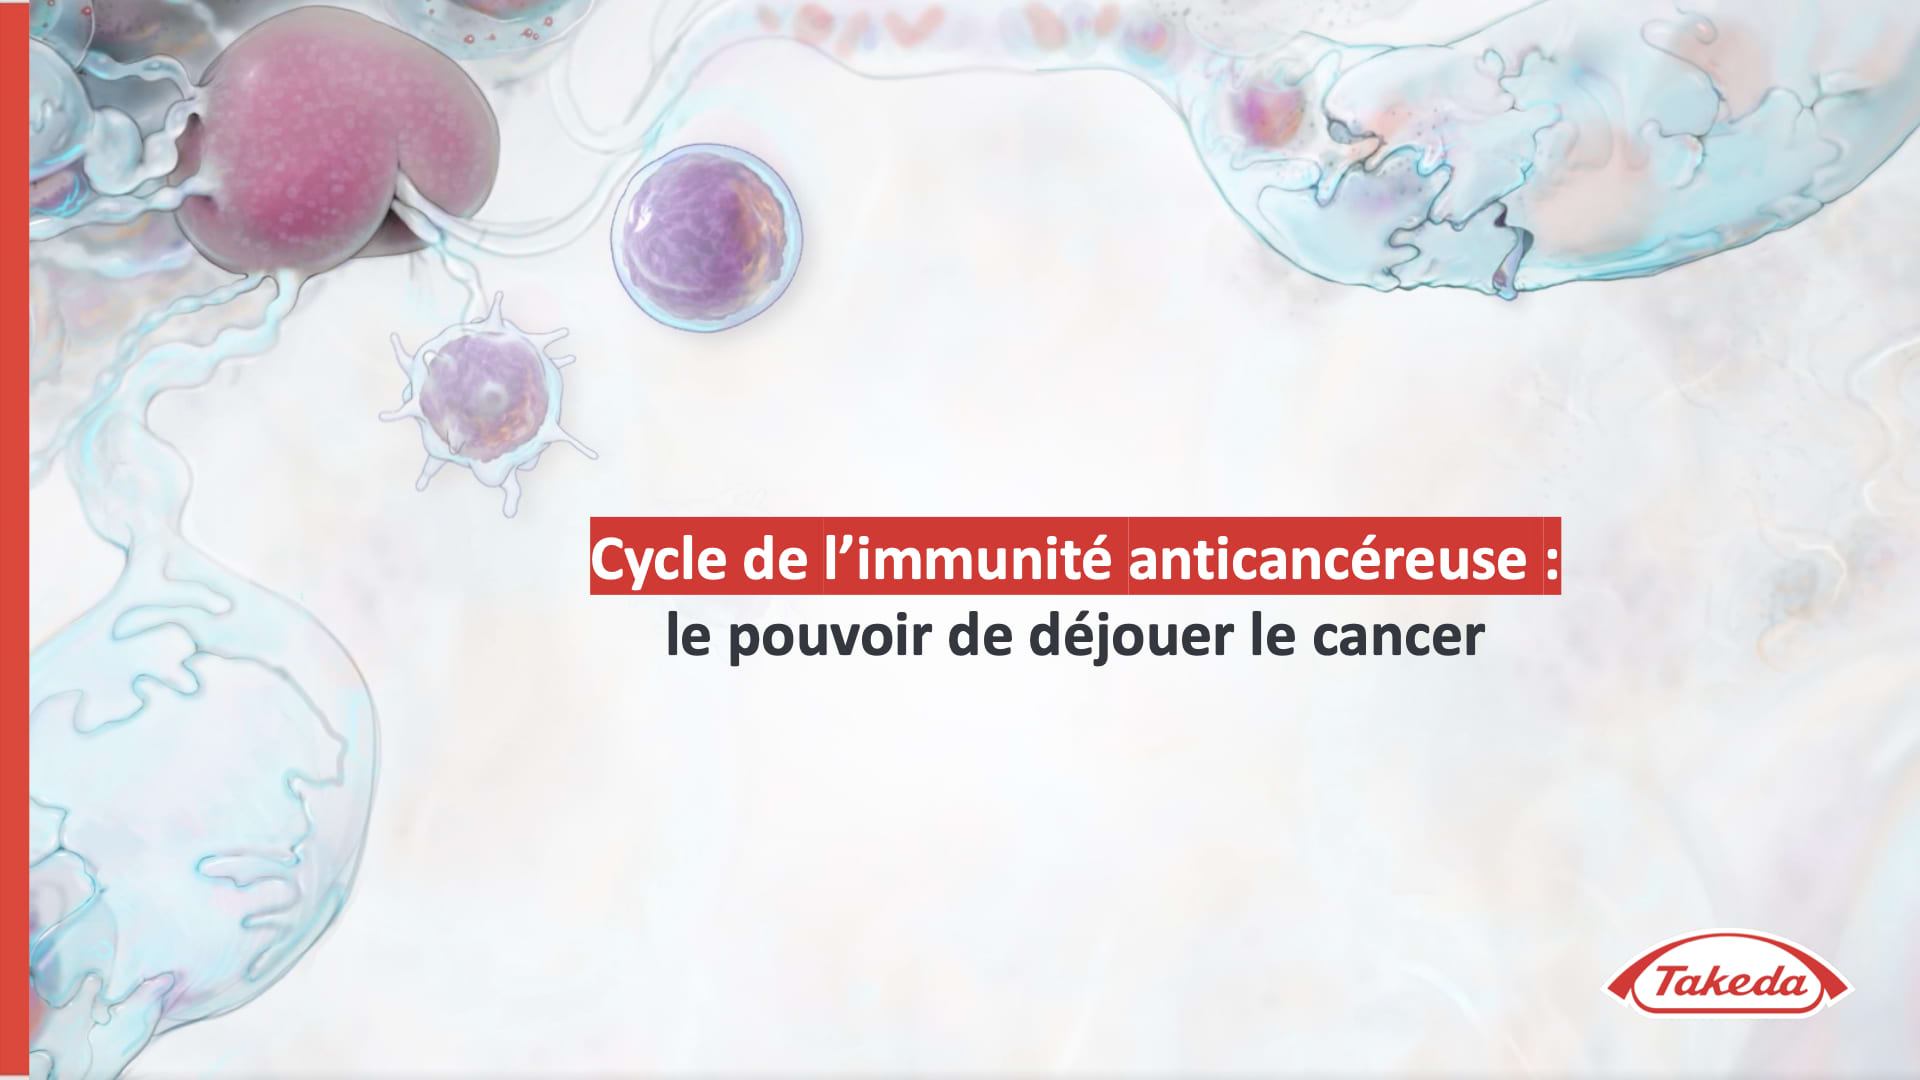 Cycle de l’immunité anticancéreuse